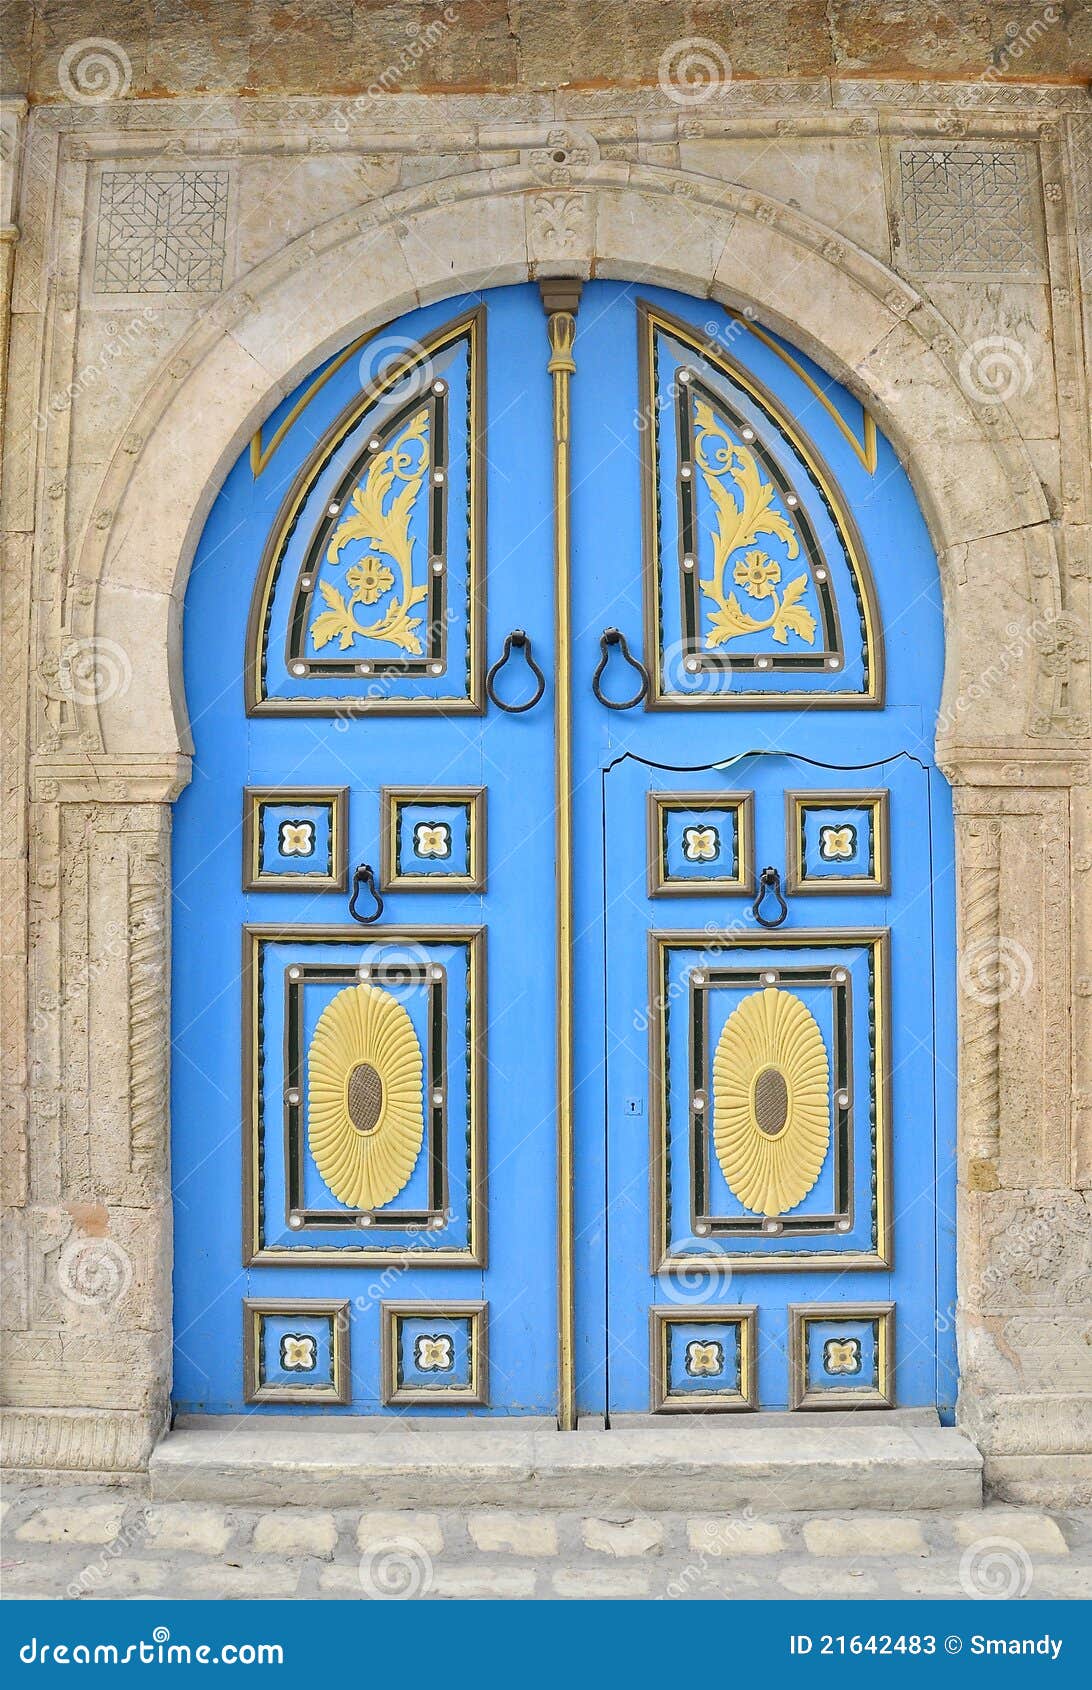 engraved blue tunisian door, diverse colour